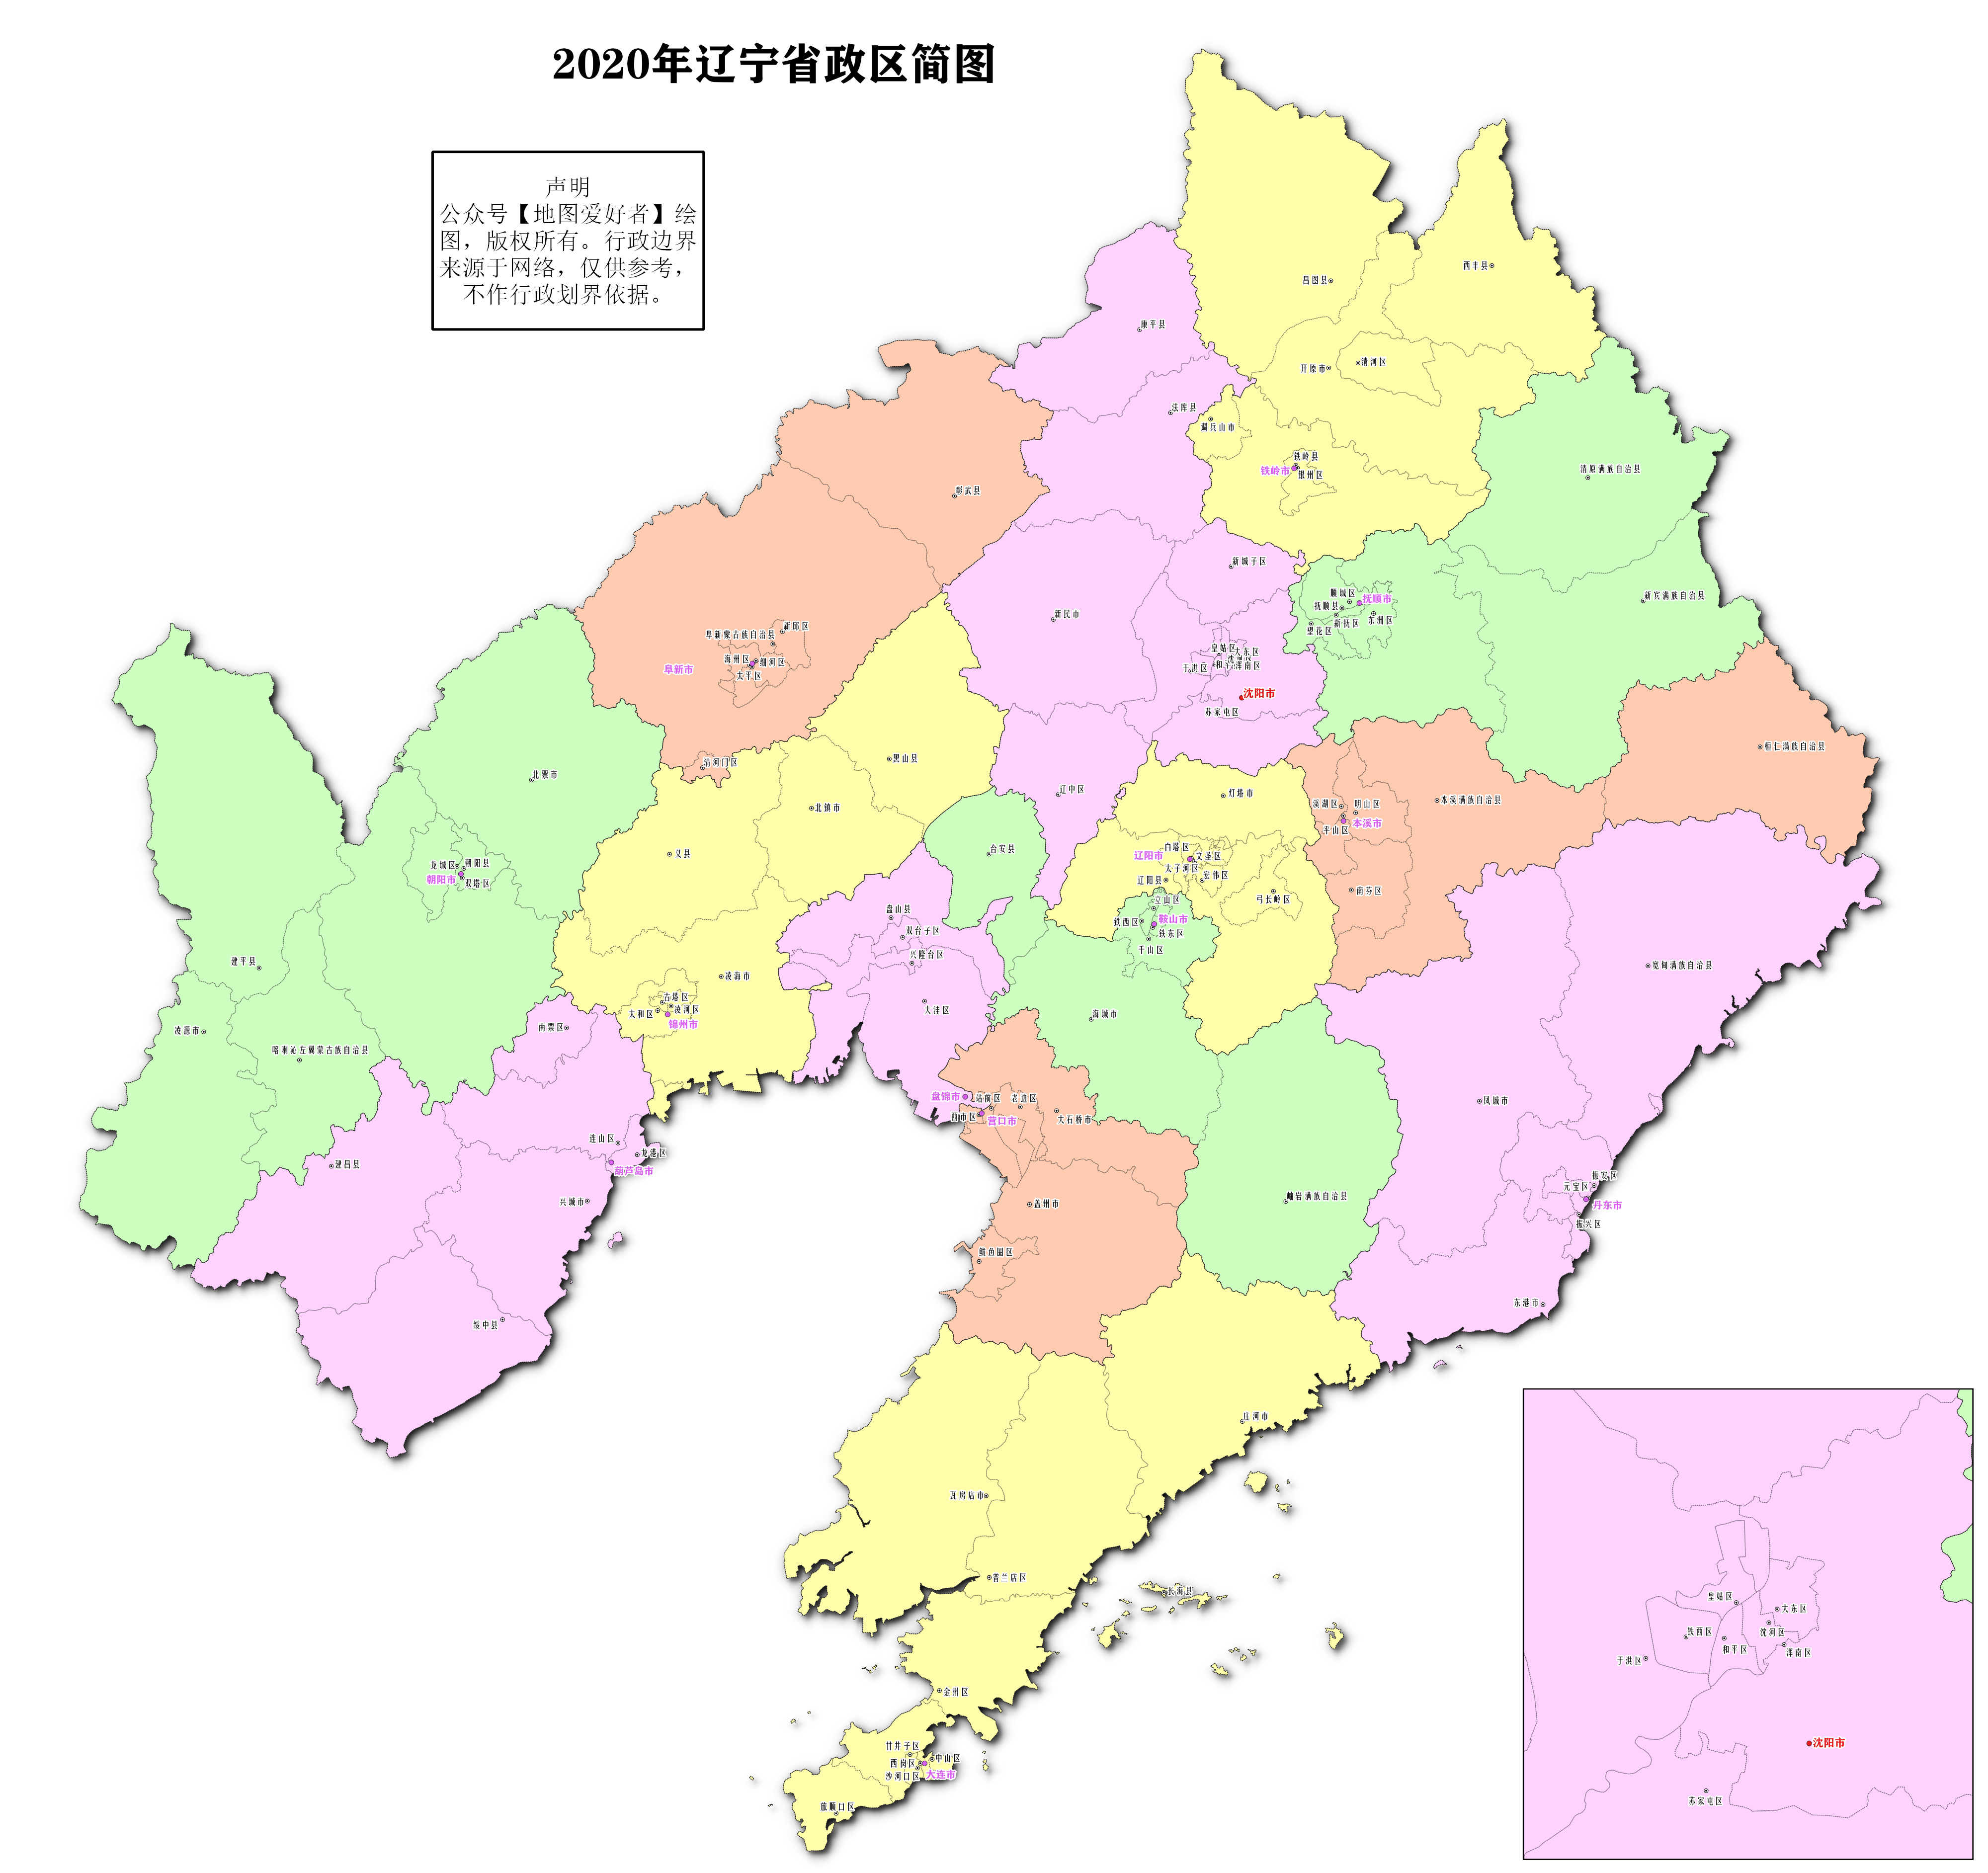 032020年港澳台地图中国香港分为十八个行政分区,每行政区设一个区